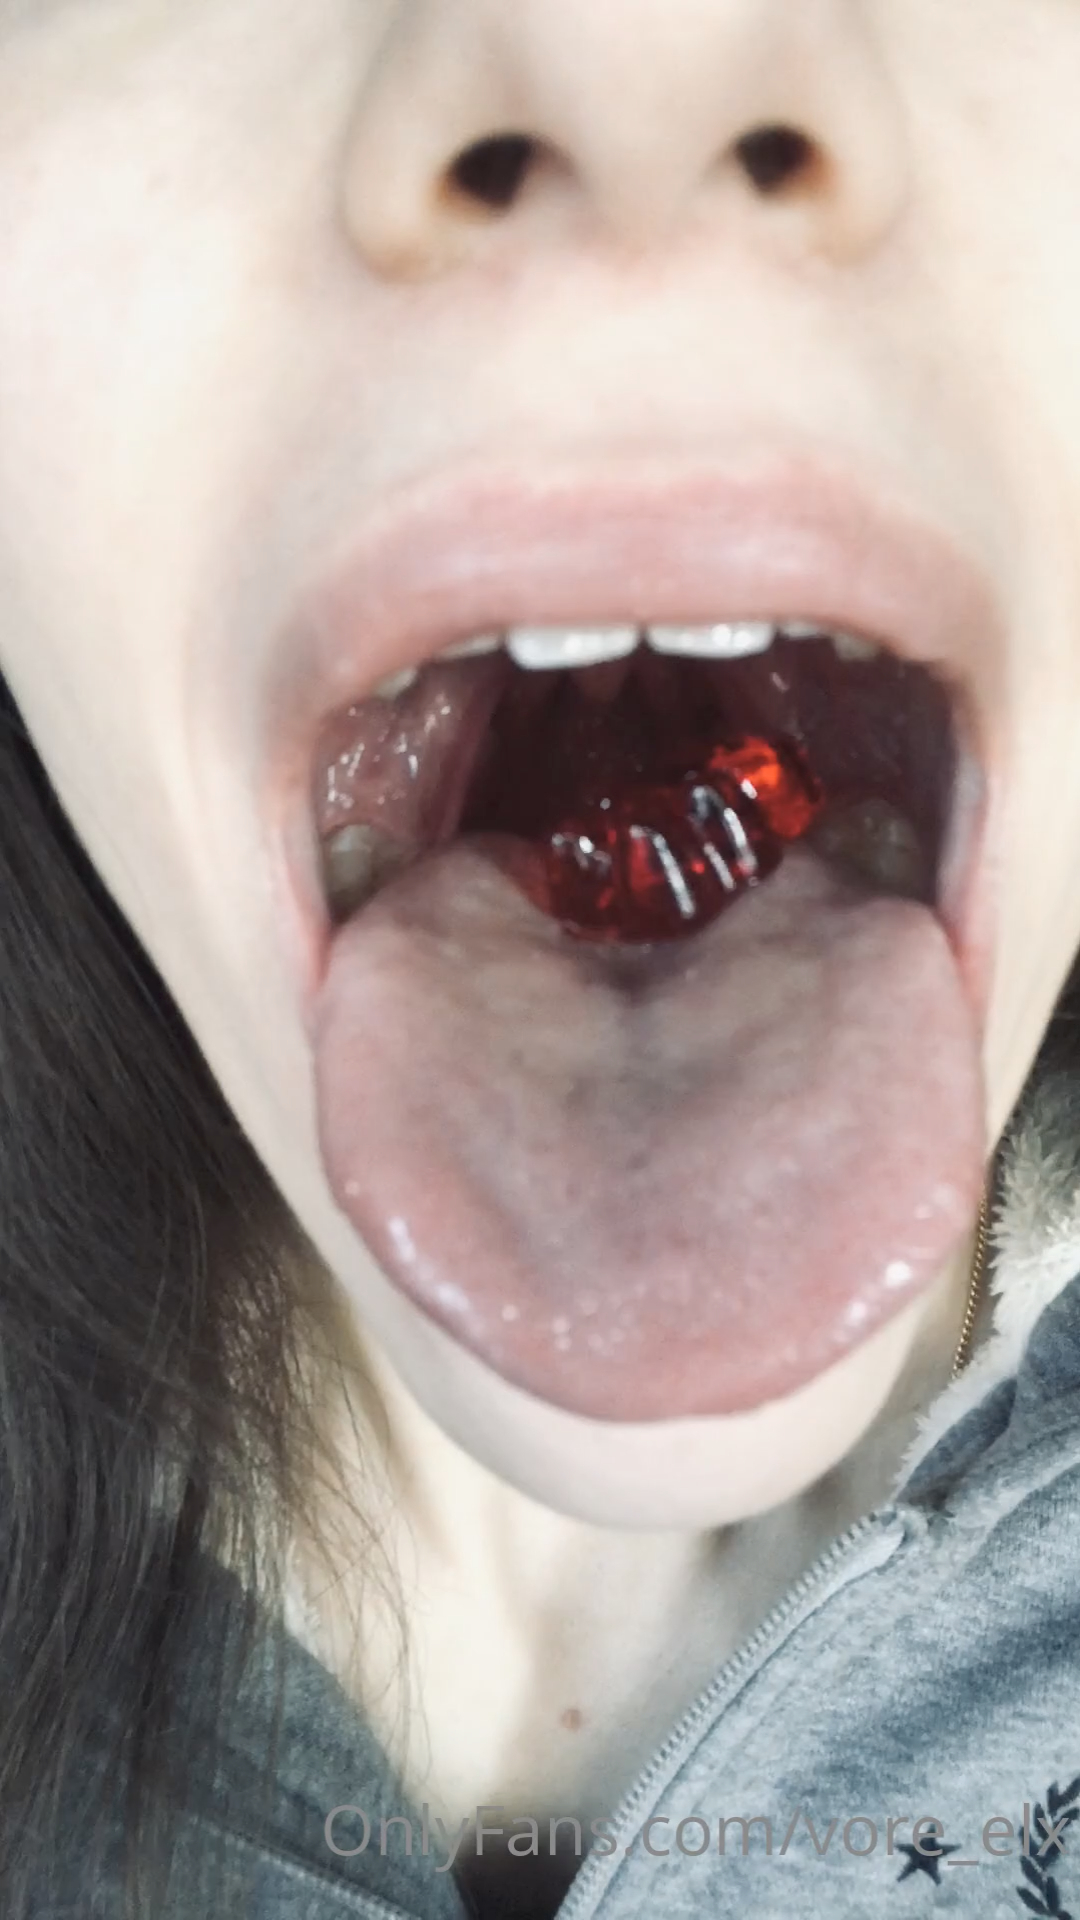 Vore gummy swallow